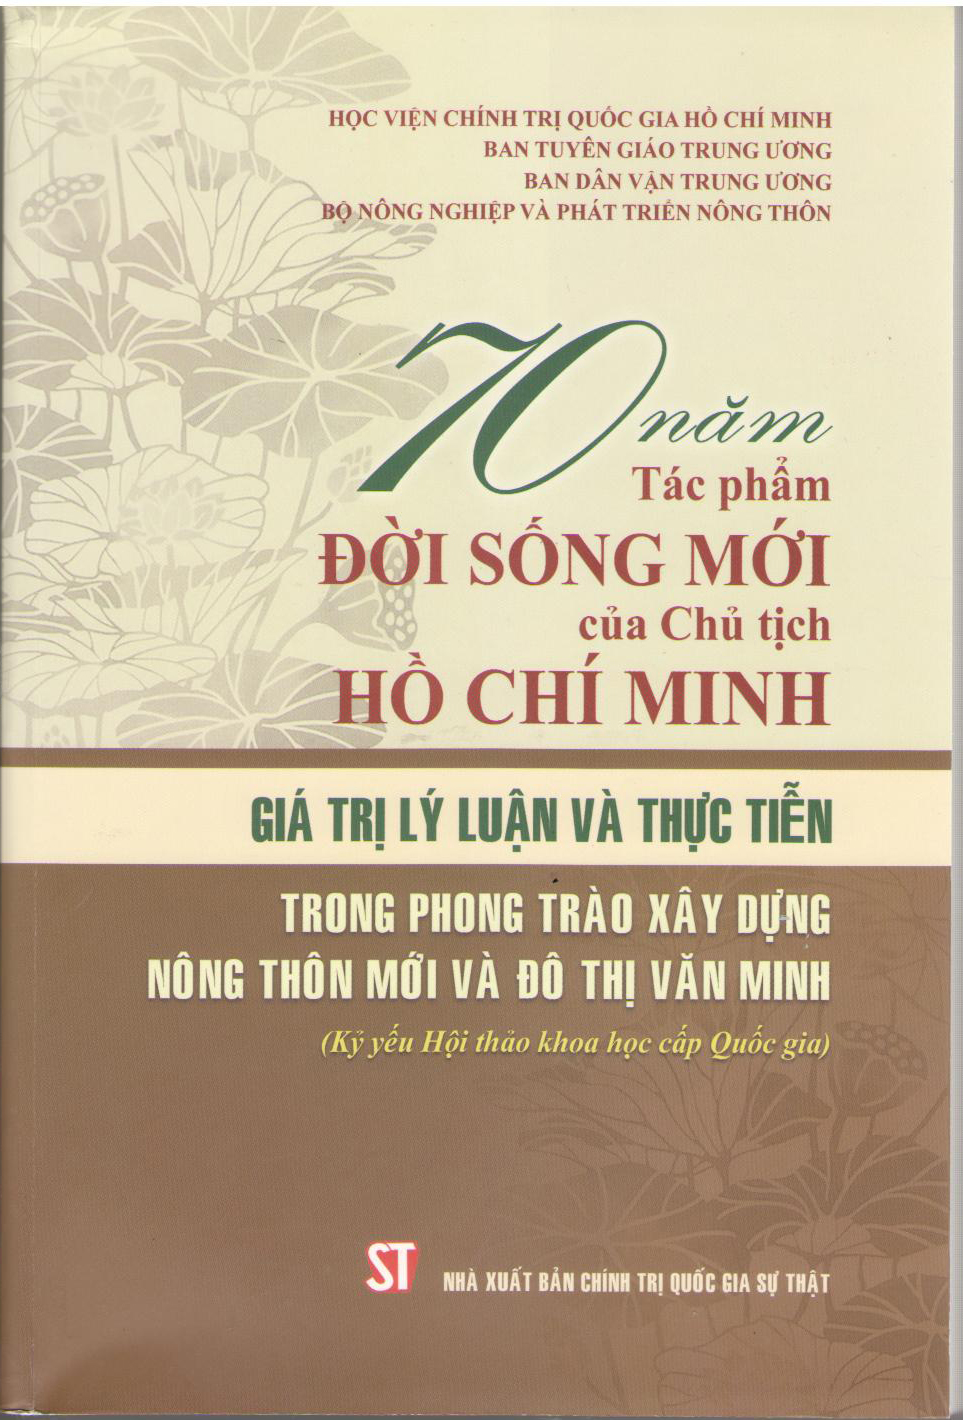 70 năm tác phẩm Đời sống mới của Chủ tịch Hồ Chí Minh